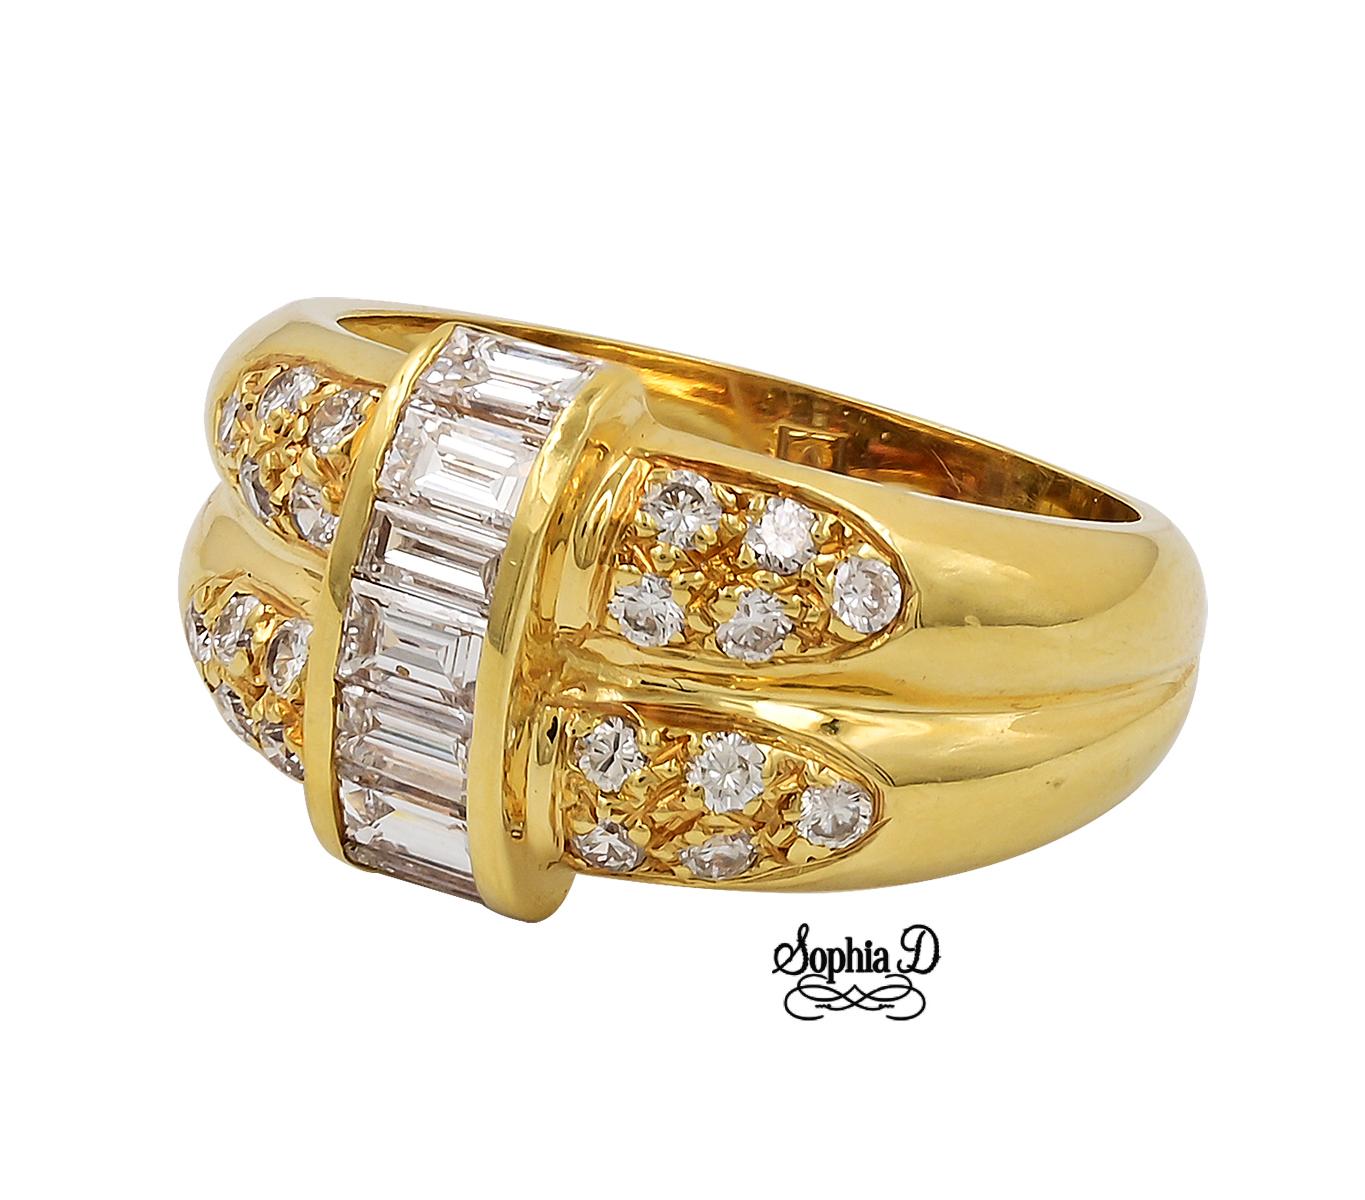 Ring aus 18 Karat Gelbgold mit Diamanten im Smaragdschliff und kleinen runden Diamanten.

Sophia D von Joseph Dardashti LTD ist seit 35 Jahren weltweit bekannt und lässt sich vom klassischen Art-Déco-Design inspirieren, das mit modernen